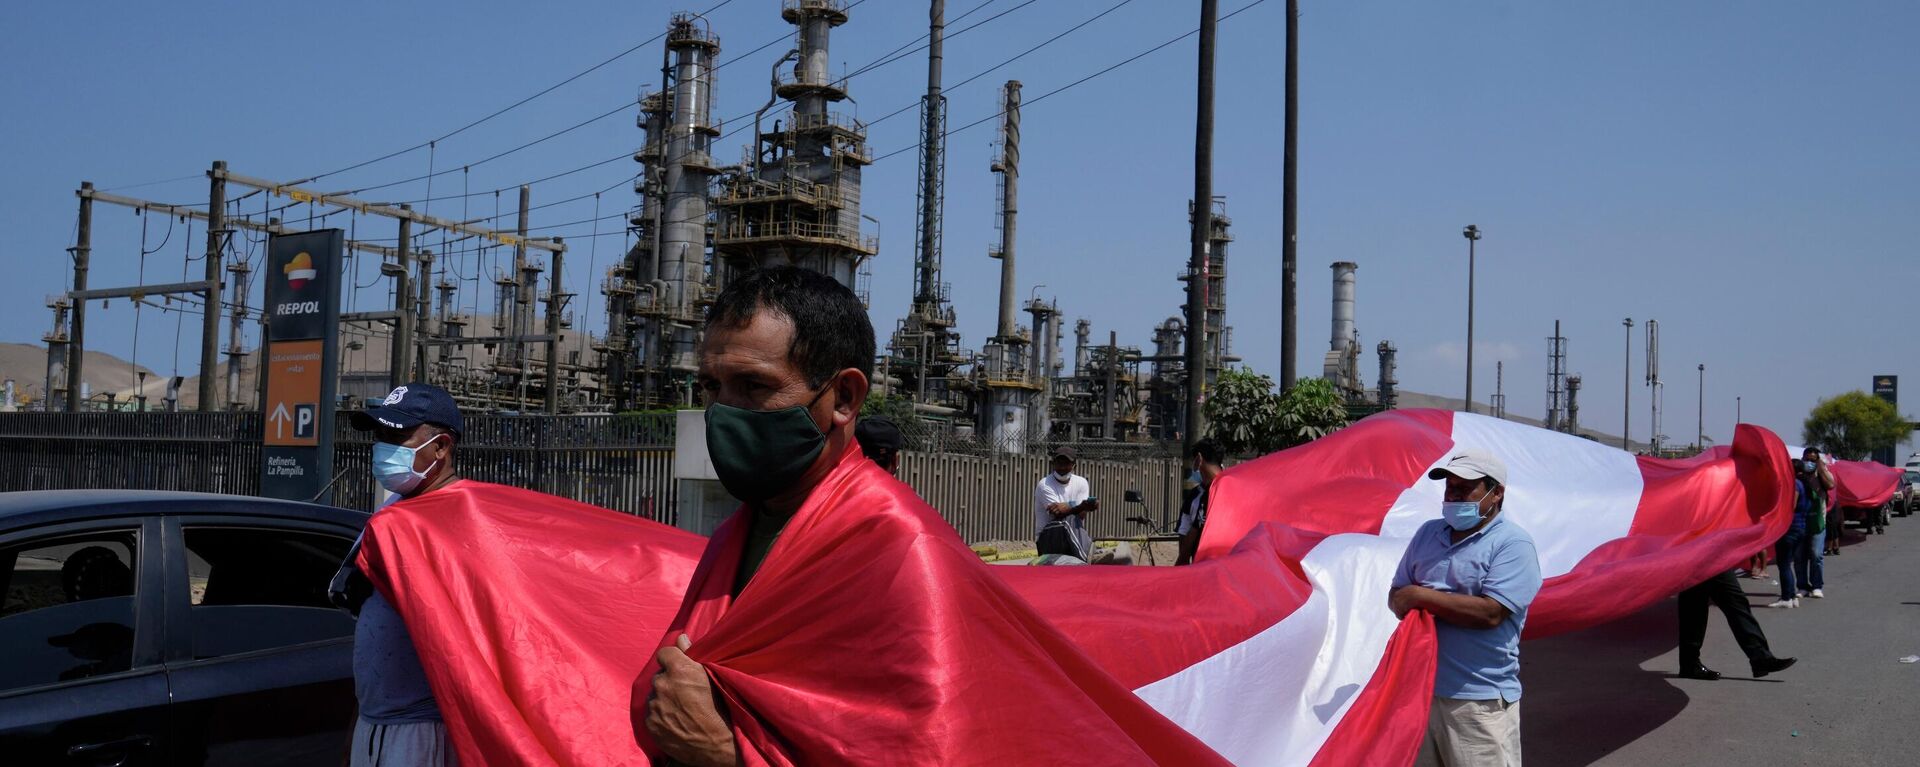 Pescadores peruanos protestan fuera de la refinería de La Pampilla tras el derrame de petróleo ocurrido en enero de 2022 - Sputnik Mundo, 1920, 07.03.2022